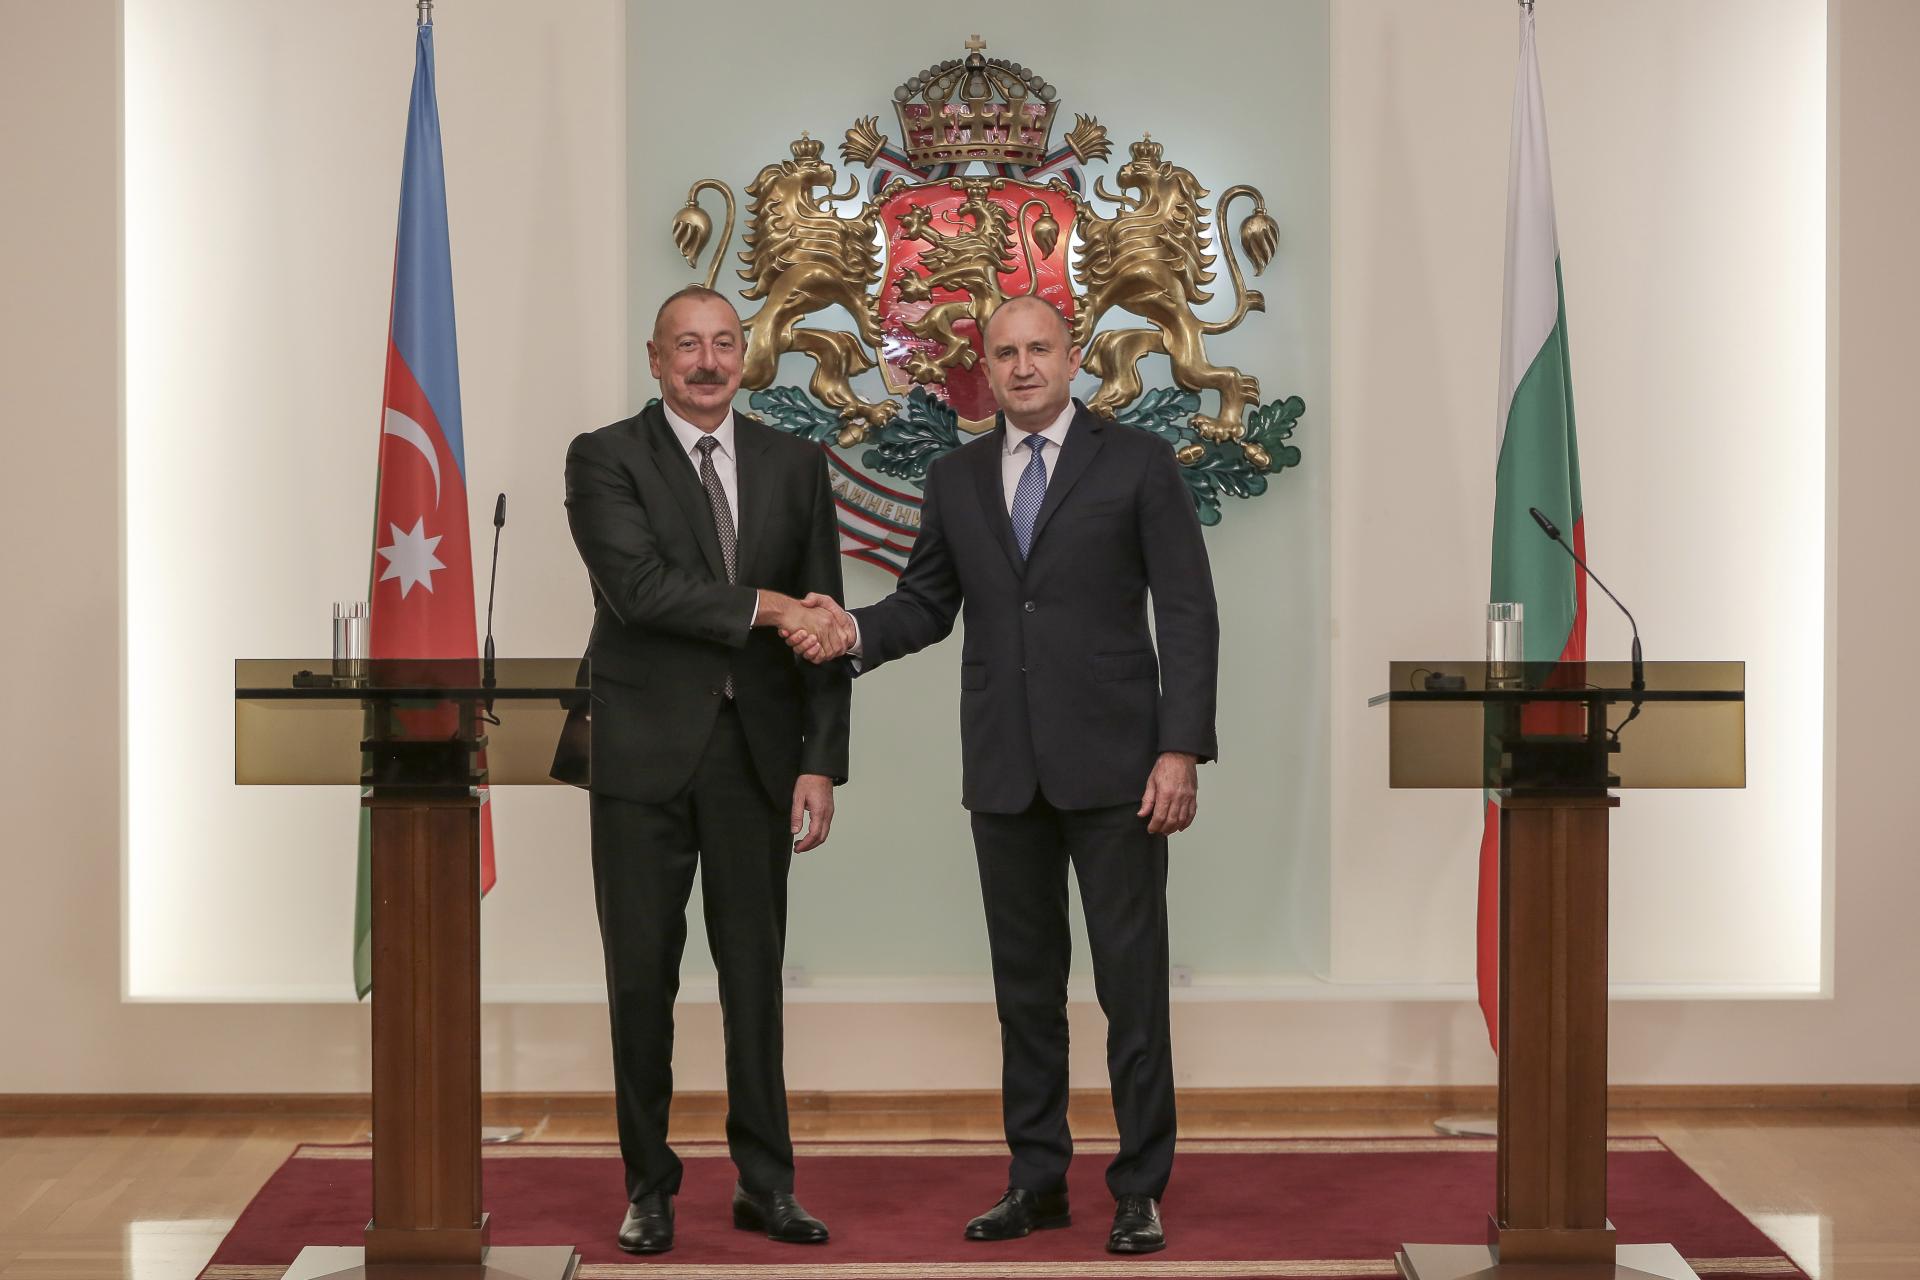 Bulharsko, Rumunsko, Maďarsko a Slovensko ponúkli pomoc s dopravou plynu z Azerbajdžanu